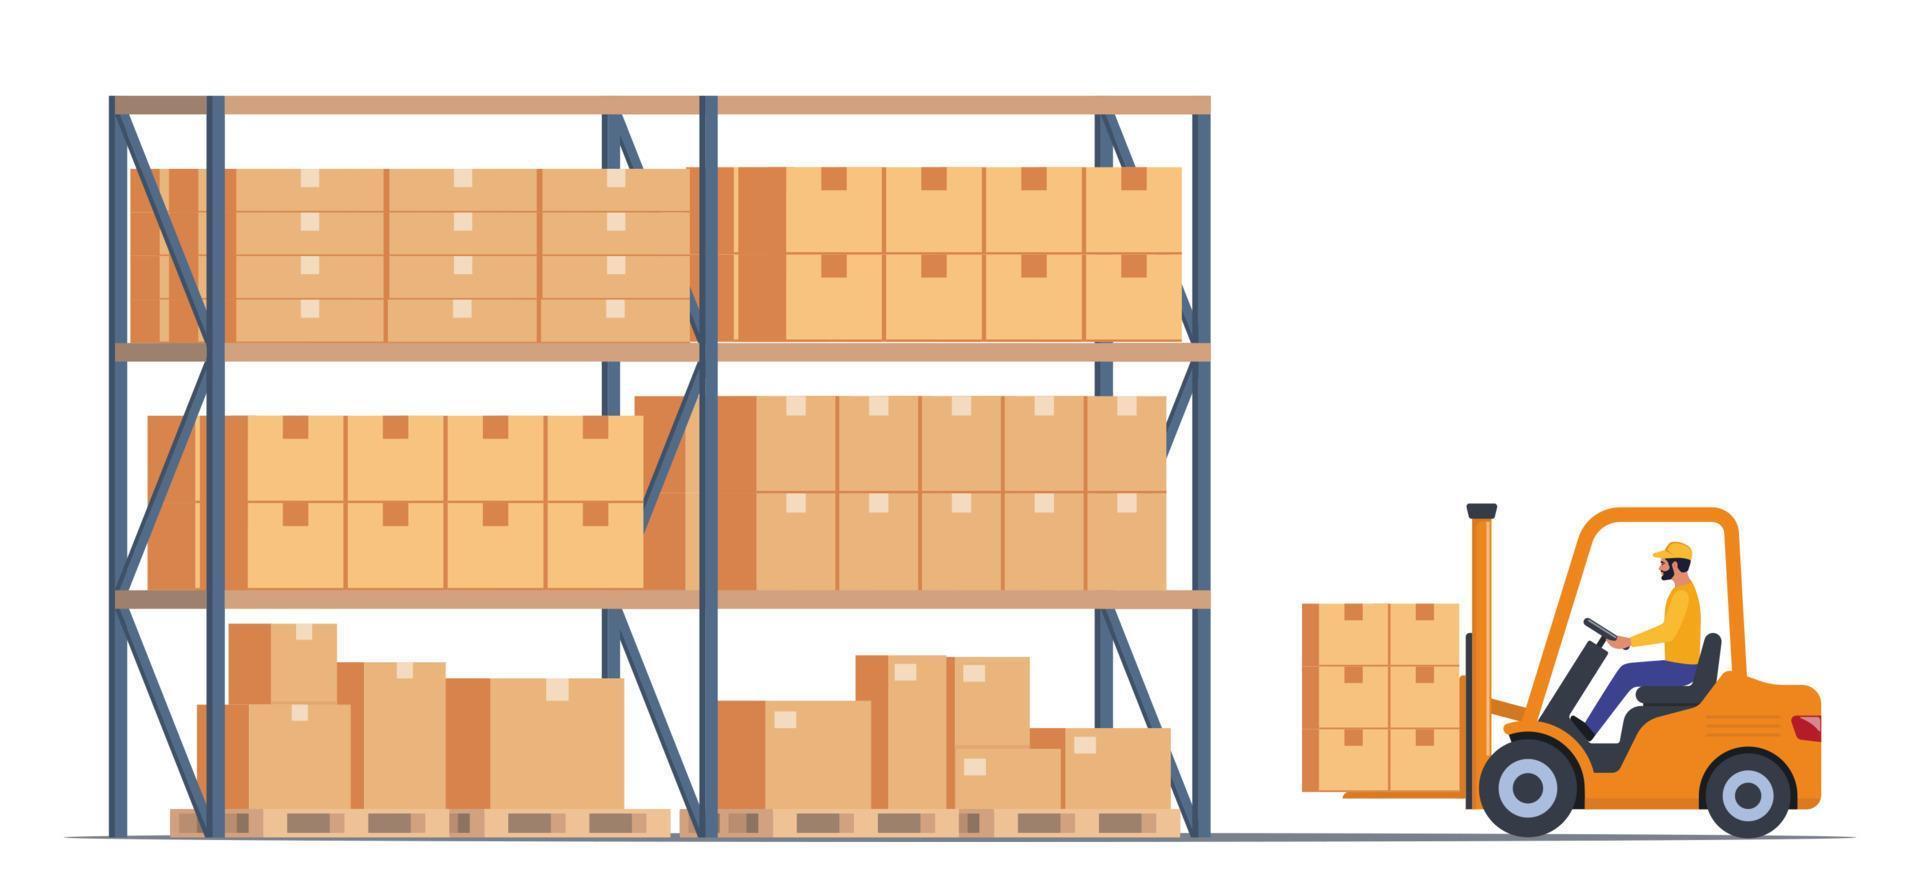 déplacer des boîtes dans l'entrepôt au moyen d'un chariot élévateur hydraulique. stockage, tri et livraison. matériel de stockage. illustration vectorielle plane. vecteur